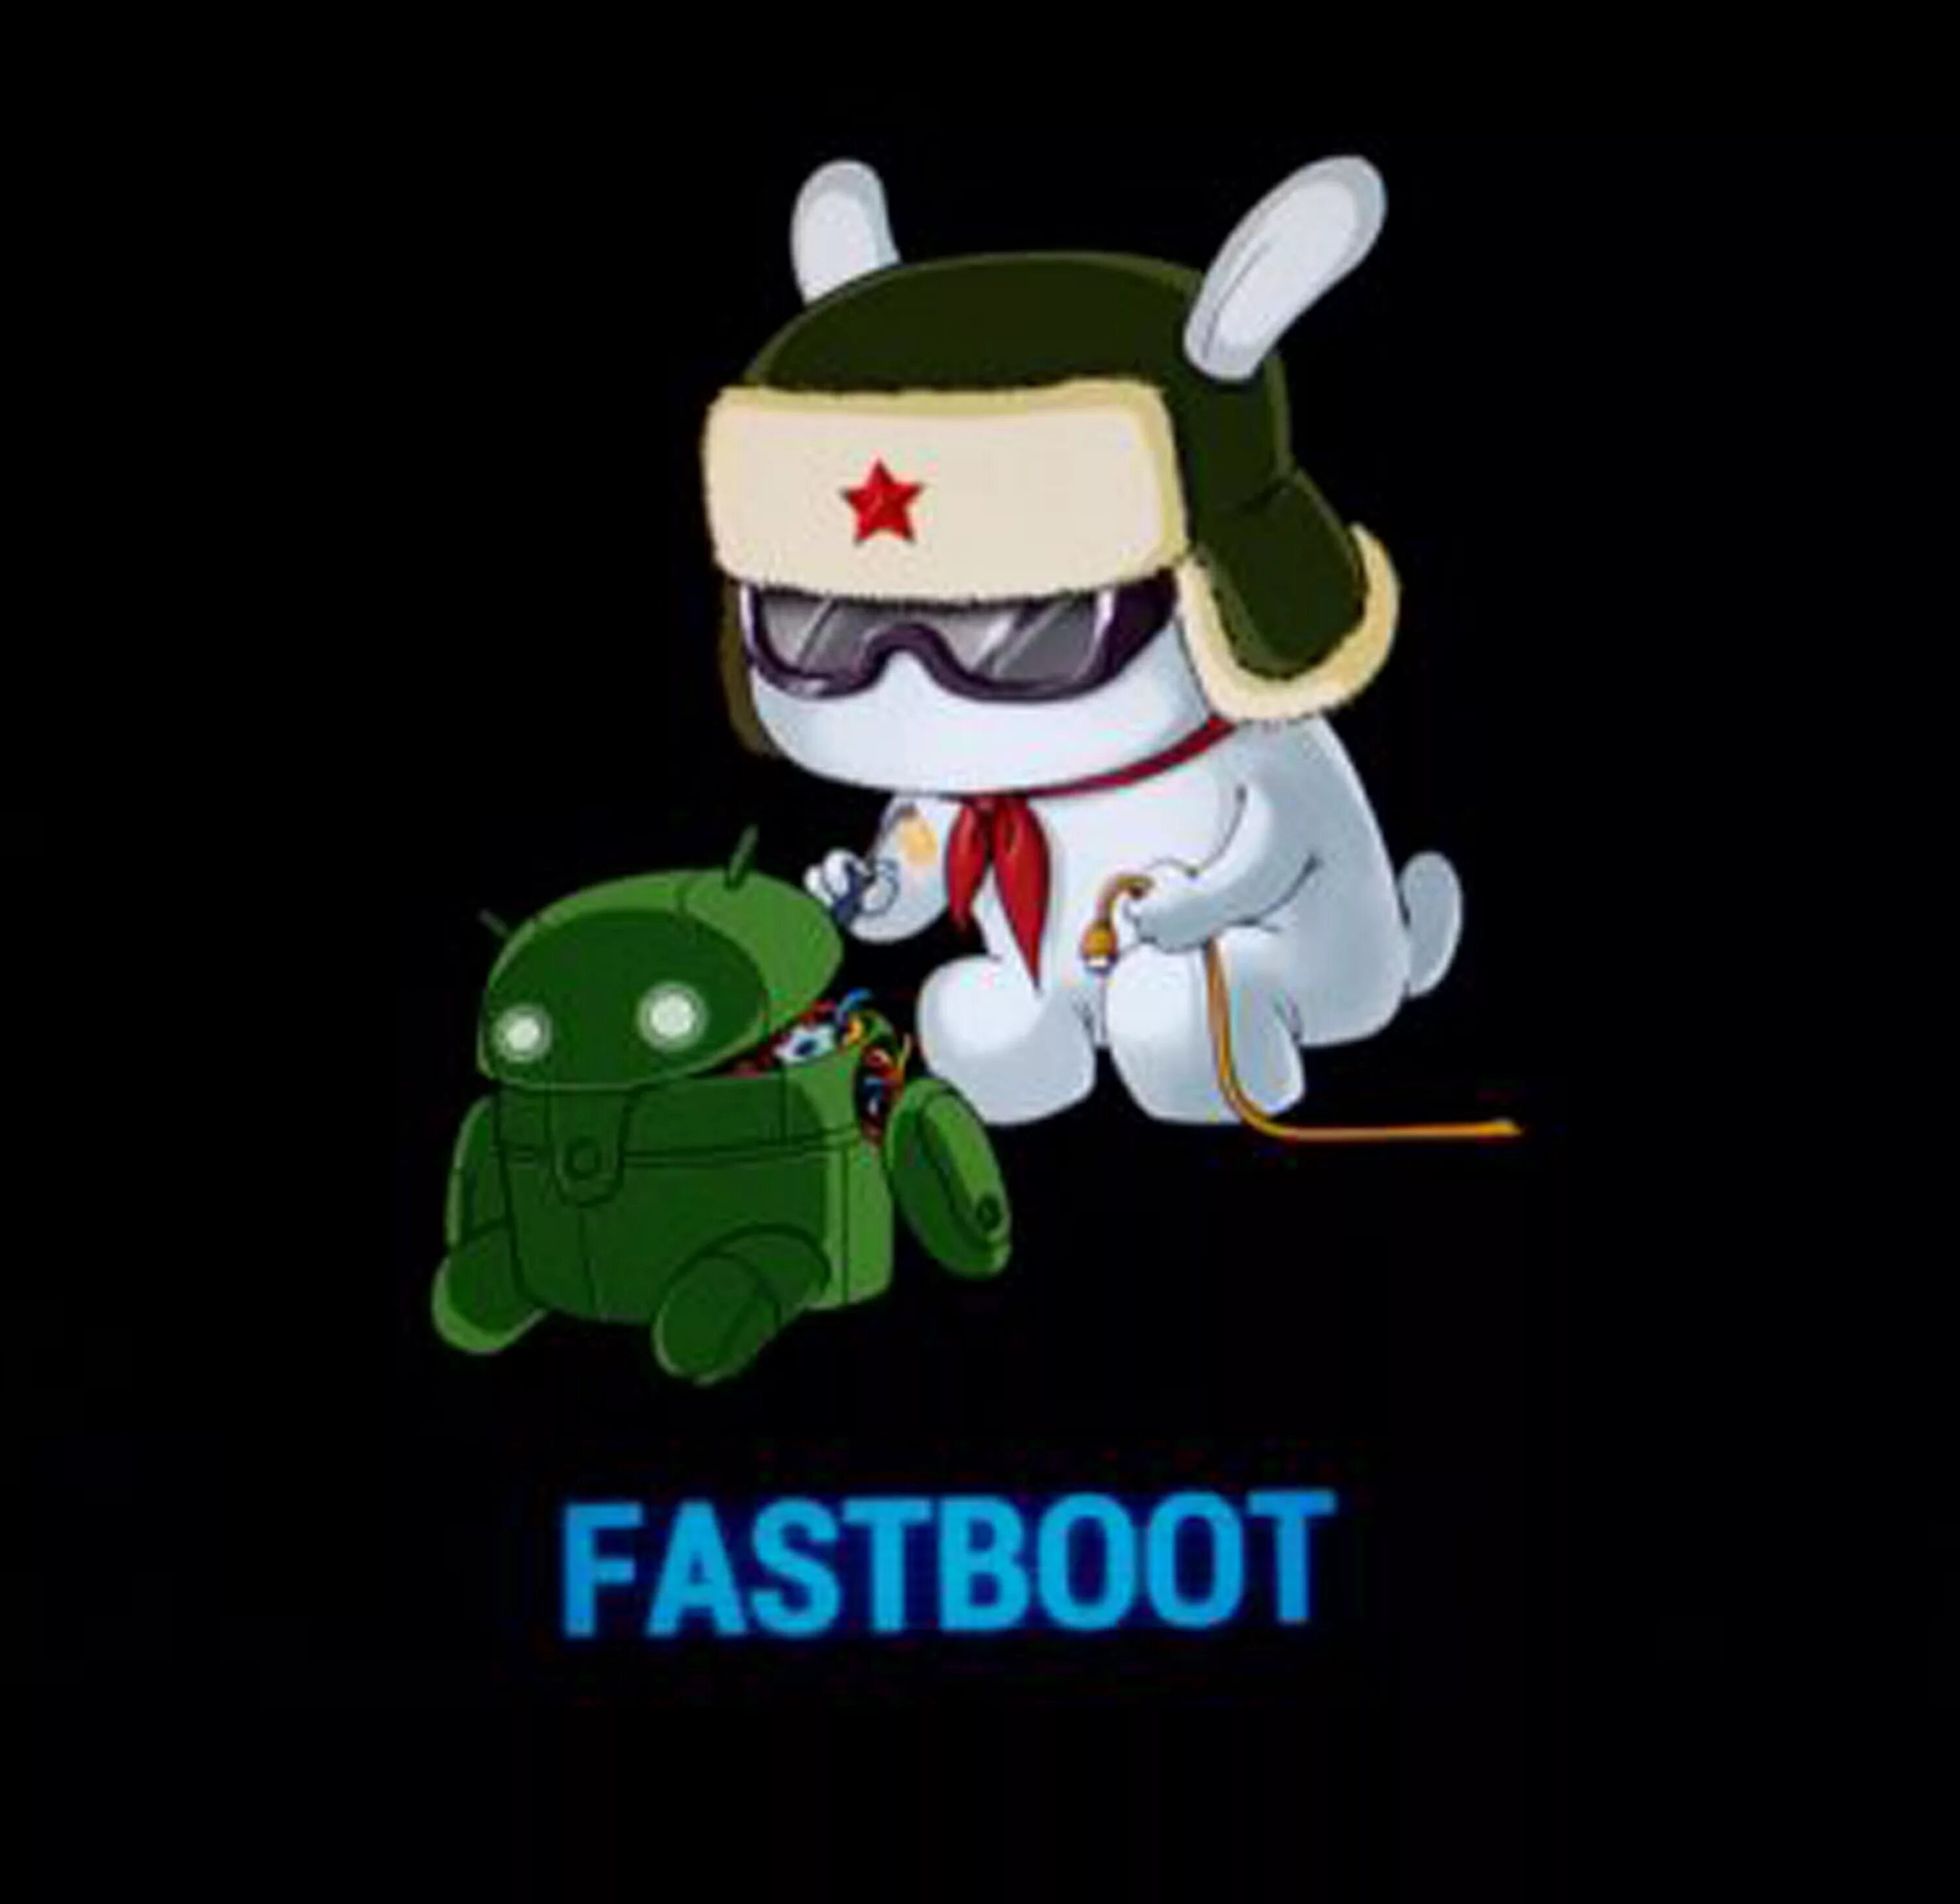 Как убрать фаст бот. Кролик Xiaomi Fastboot. Заяц андроид Fastboot. Заяц чинит андроид Xiaomi. Fastboot Xiaomi logo.